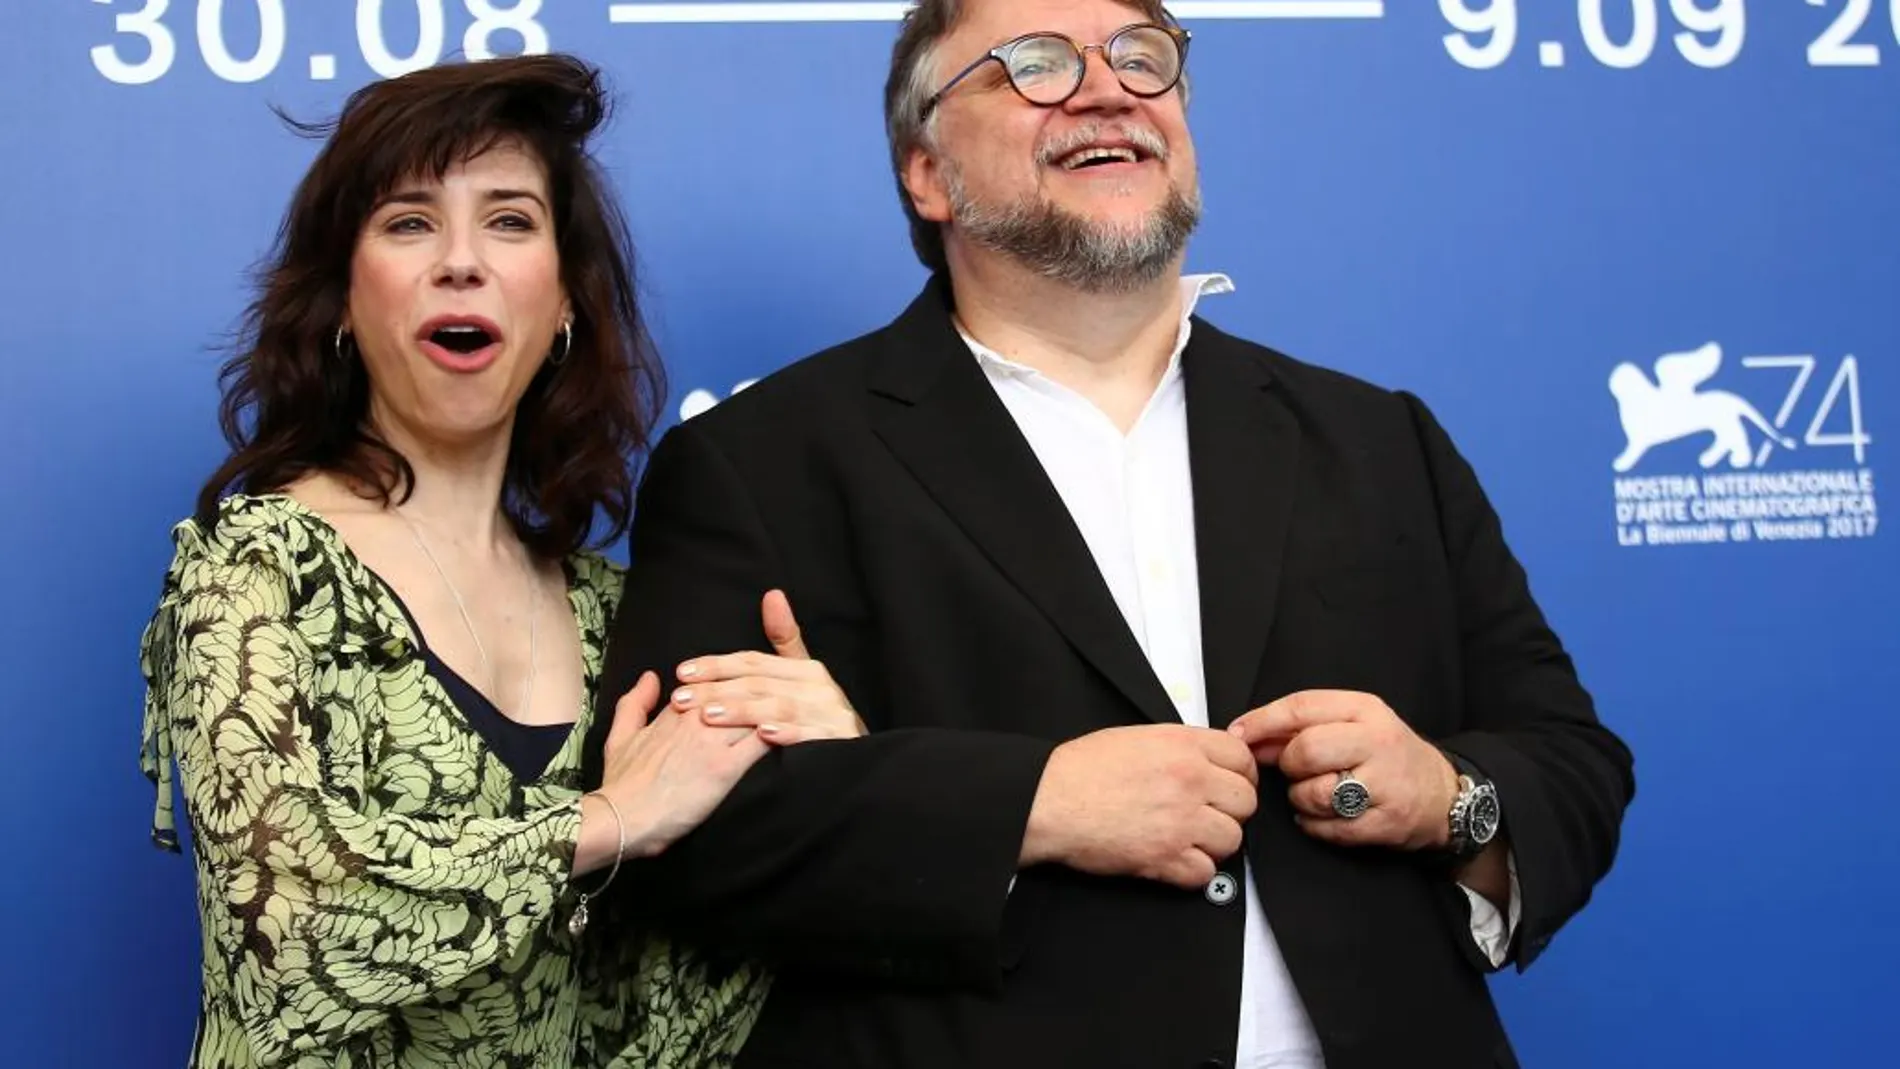 Guillermo del Toro con la actriz Sally Hawkins durante la presentación de la película "La forma del agua"en el festival de Venecia